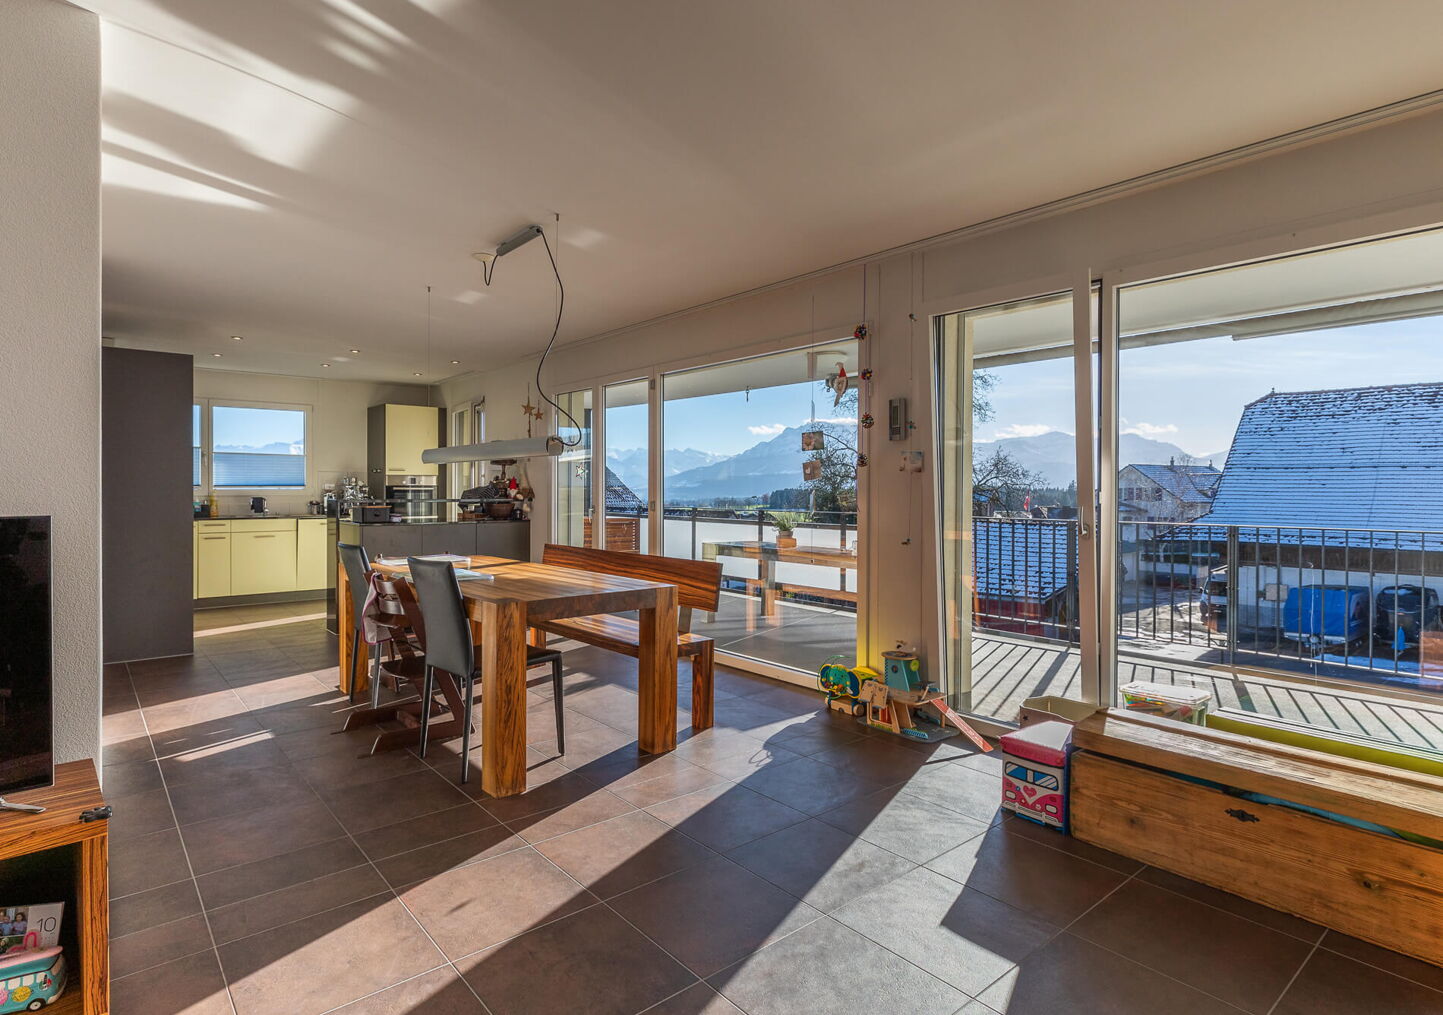 Immobilienfotografie: Grosses, helles Wohnzimmer mit Blick auf die Wohnküche und den grossen Balkon